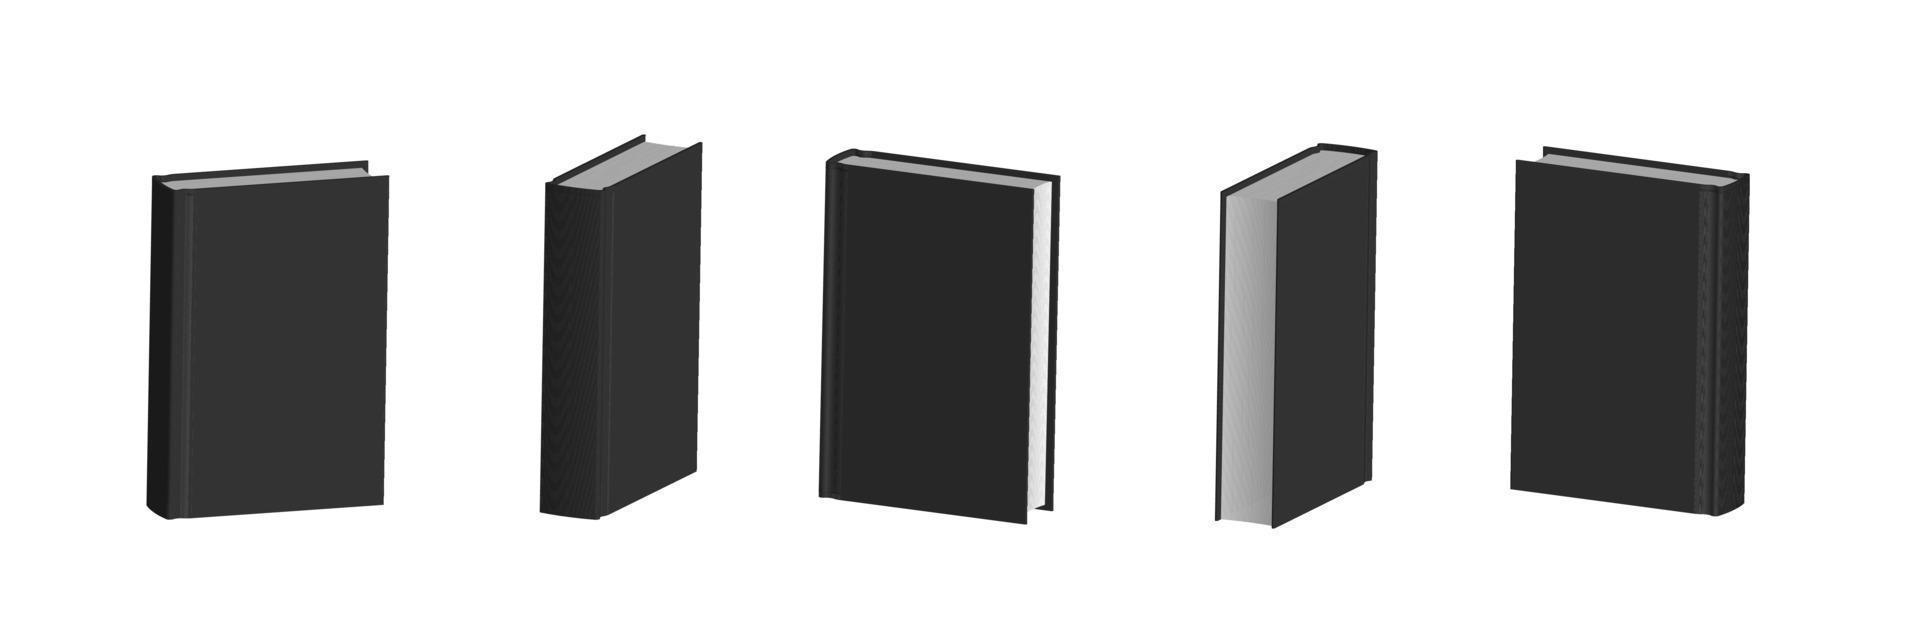 ensemble de livres noirs fermés dans différentes positions pour librairie vecteur